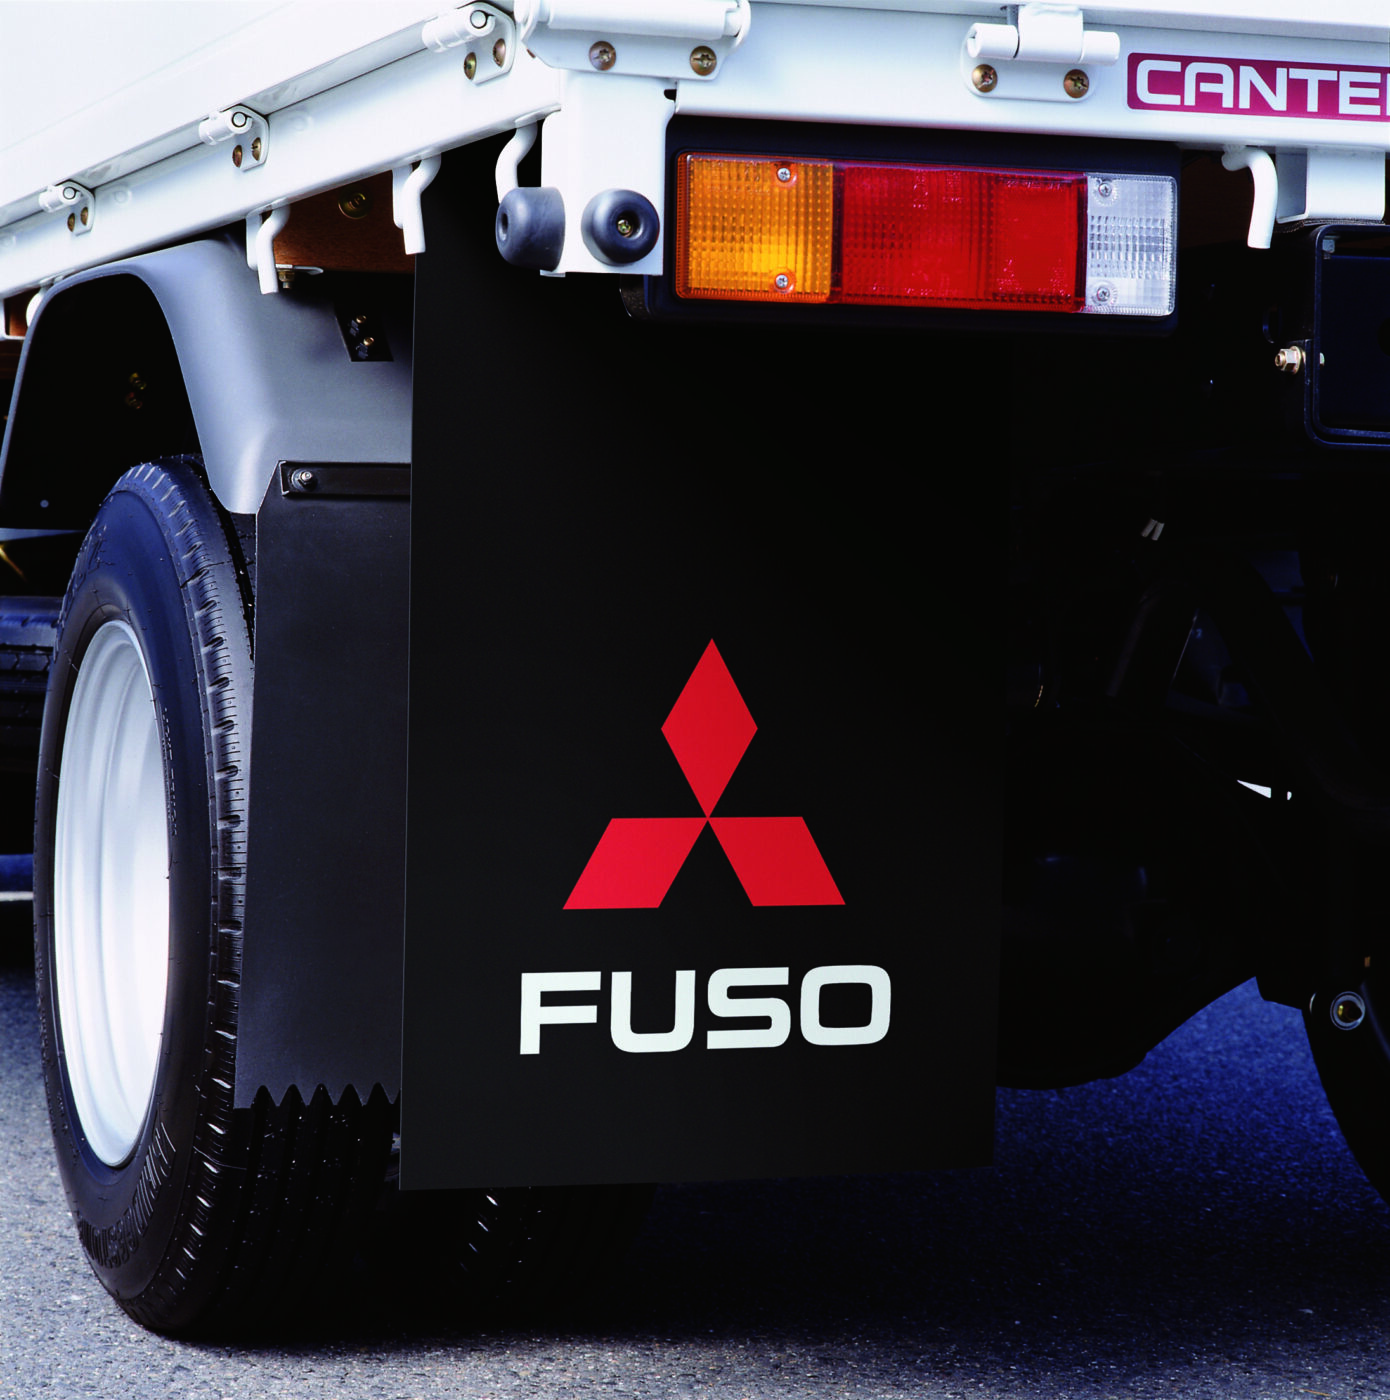 Deflektory nečistot FUSO chrání vozidlo, cestující, ostatní vozidla a chodce před blátem a nečistotami, které pneumatiky vyrážejí.